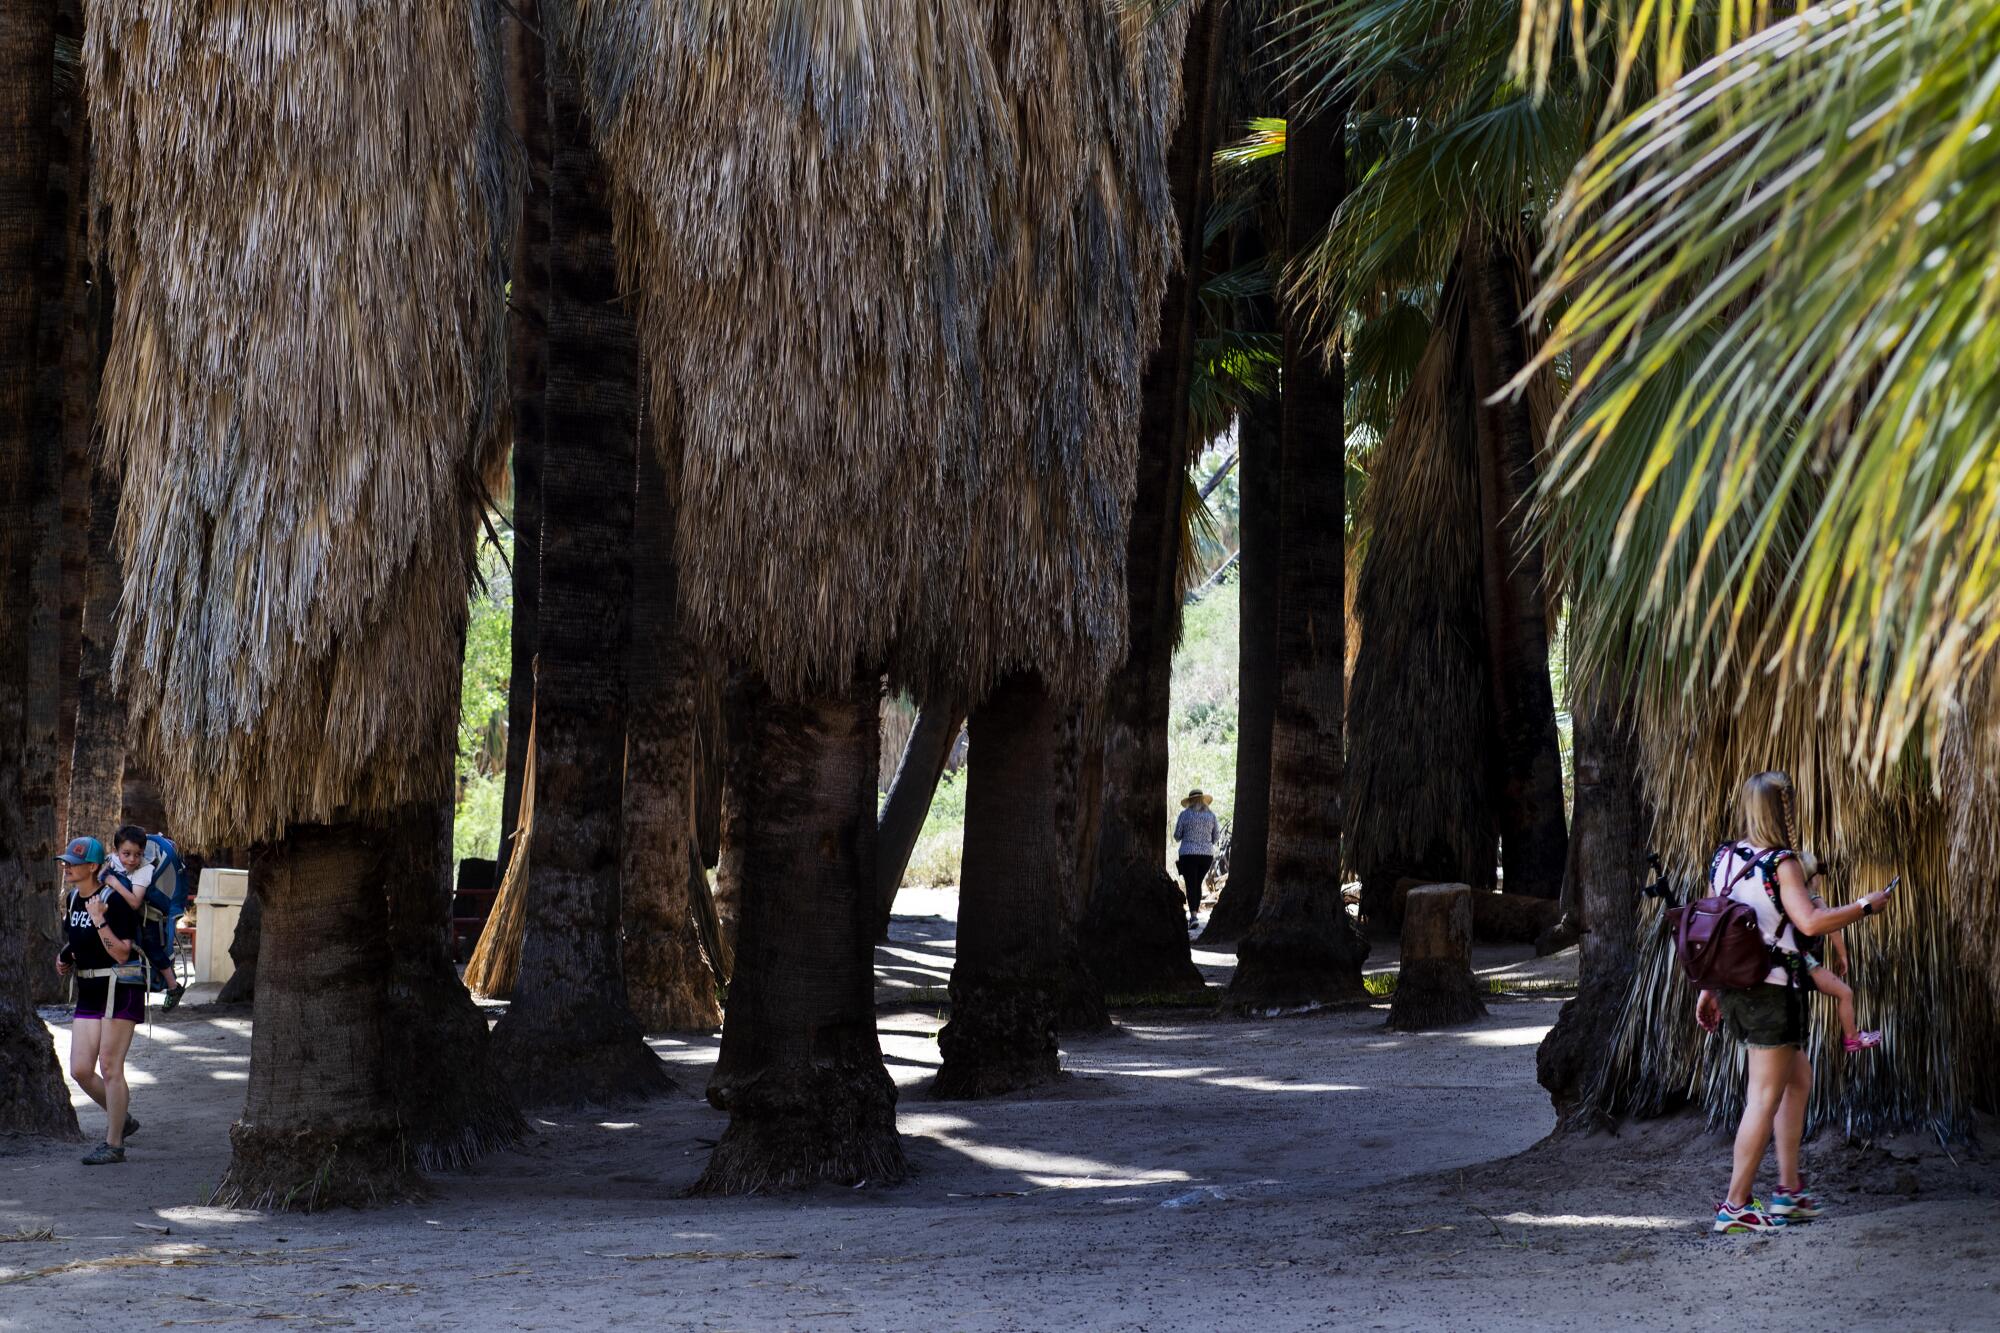 People walk among fan palm trees.